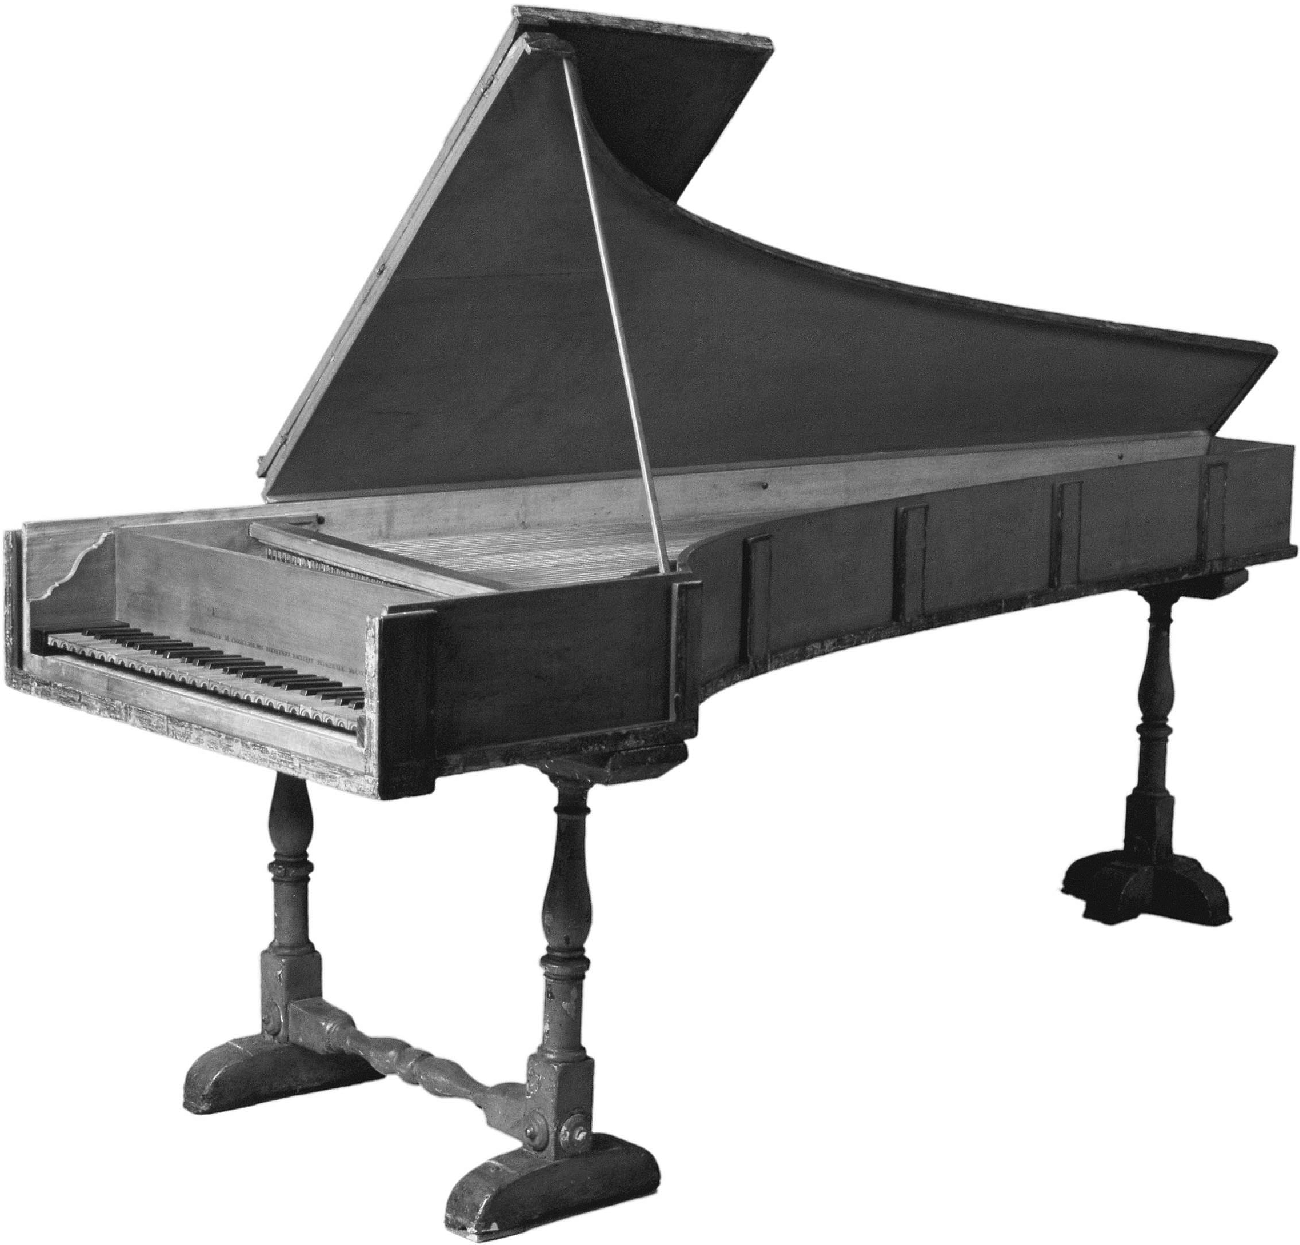 Bartolomeo Cristofori, Grand Piano, Italian (Florence)